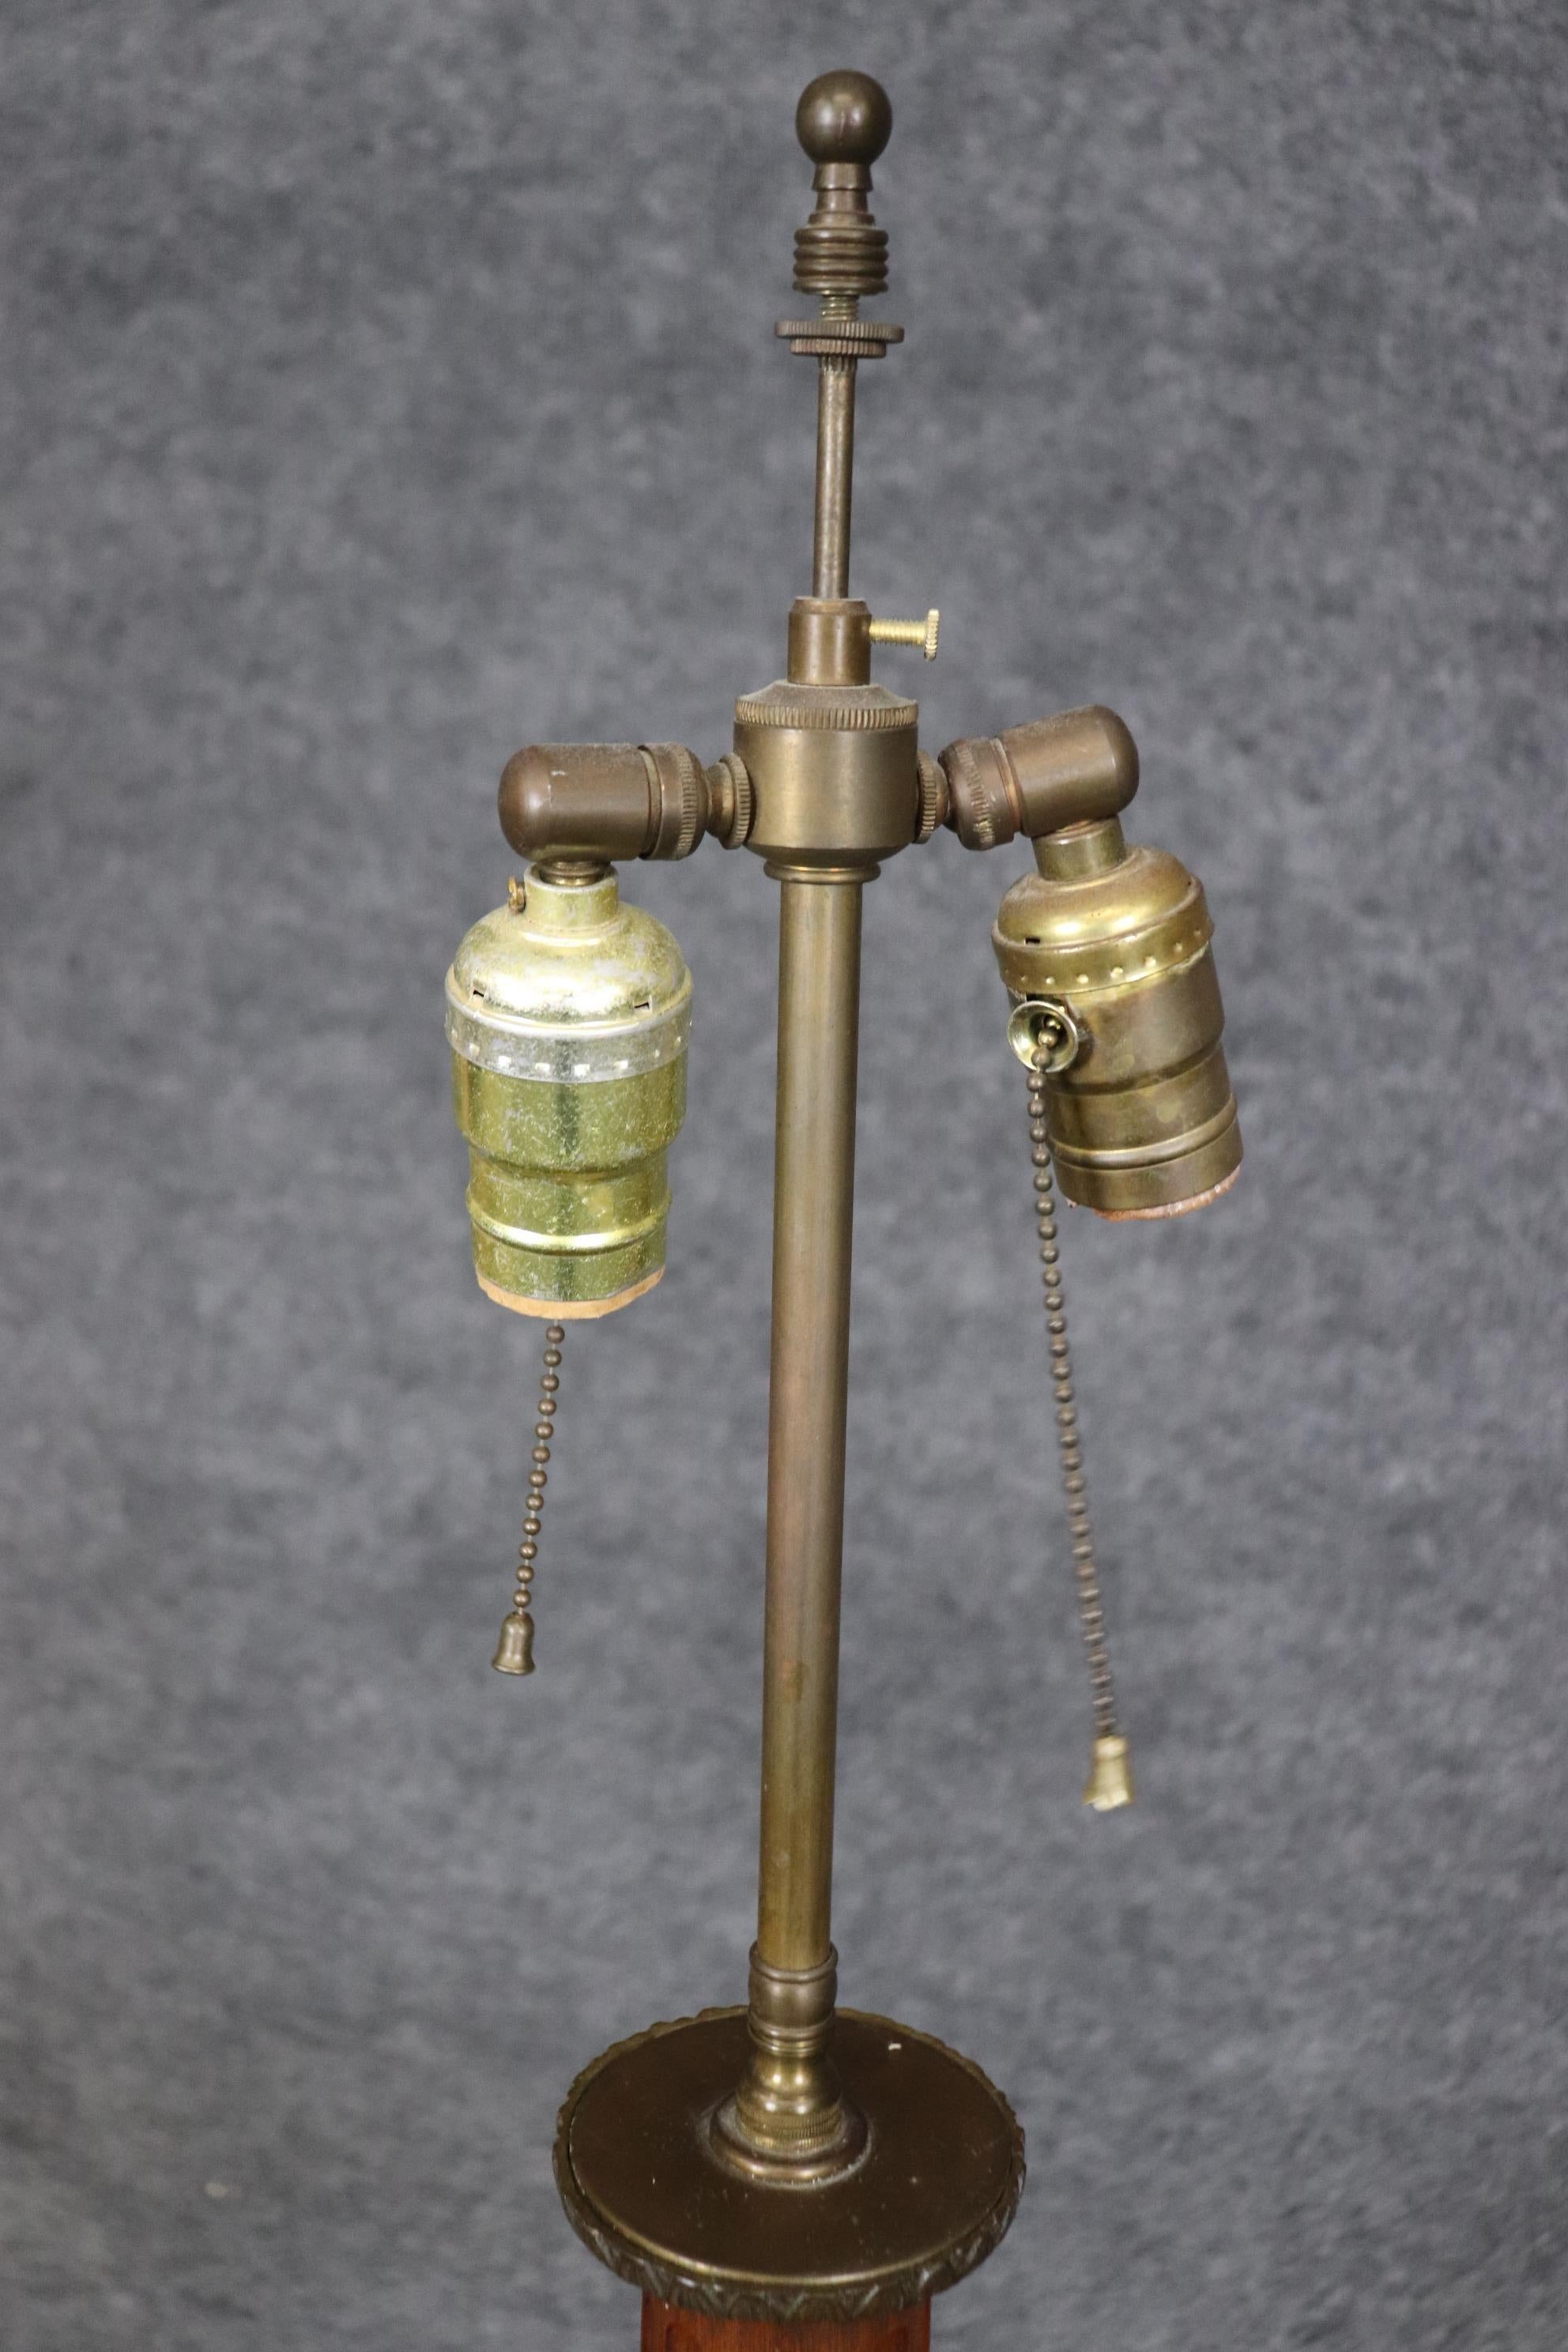 Dies ist eine hervorragende und sehr seltene Stehlampe im Directoire-Stil aus Messing mit Rillen. Die Lampe ist französisch und befindet sich in einem guten antiken Zustand. Maße: 57,75 hoch x 18,5 breit x 18,5 tief. Sie stammt aus den 1950er